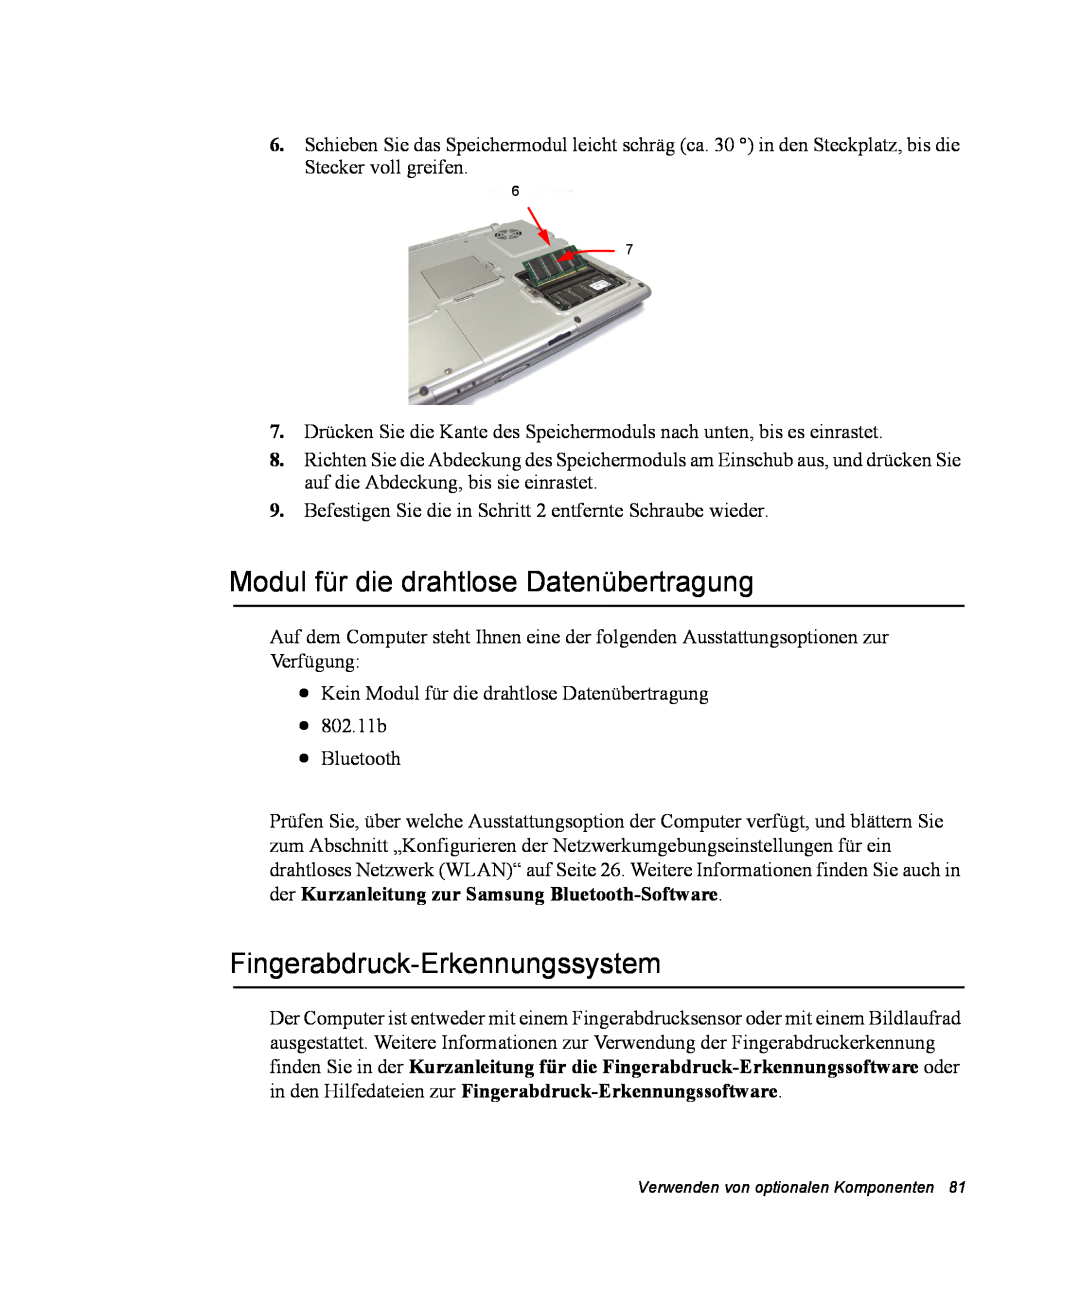 Samsung NX10RWBGBH/SEG, NX10PRDV01/SEG manual Modul für die drahtlose Datenübertragung, Fingerabdruck-Erkennungssystem 